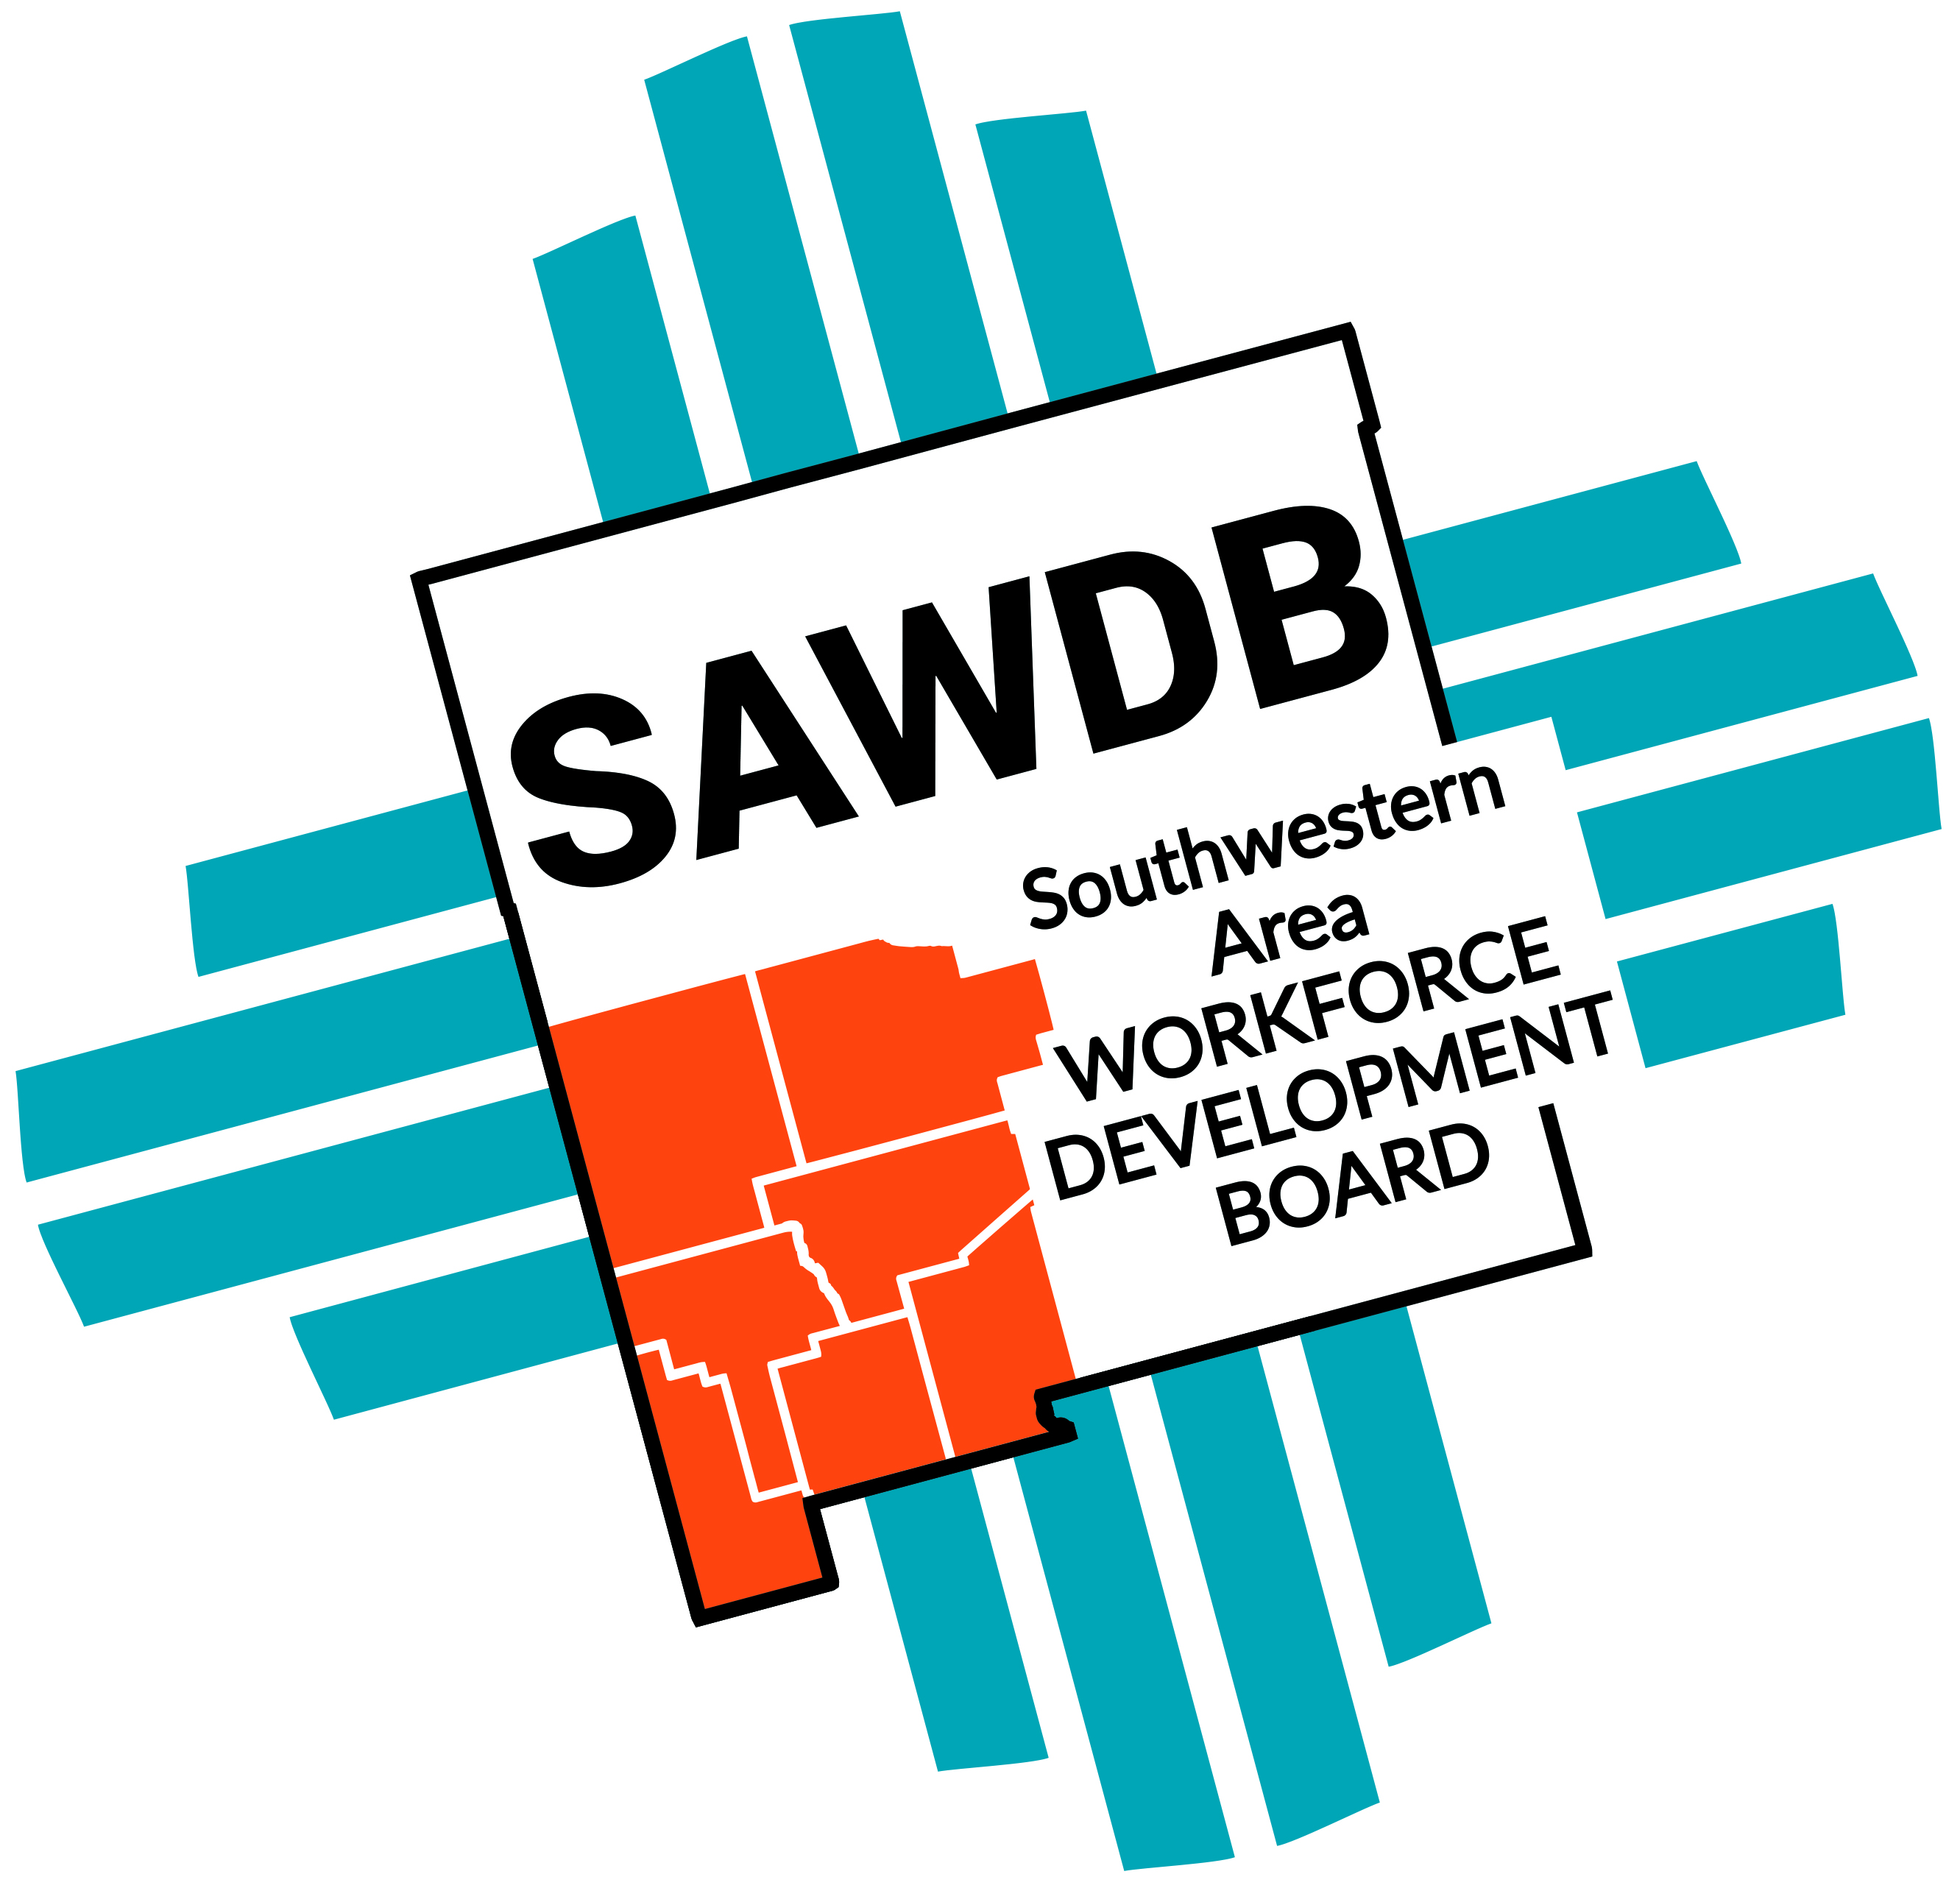 Organization logo of Southwestern Area Workforce Development Board